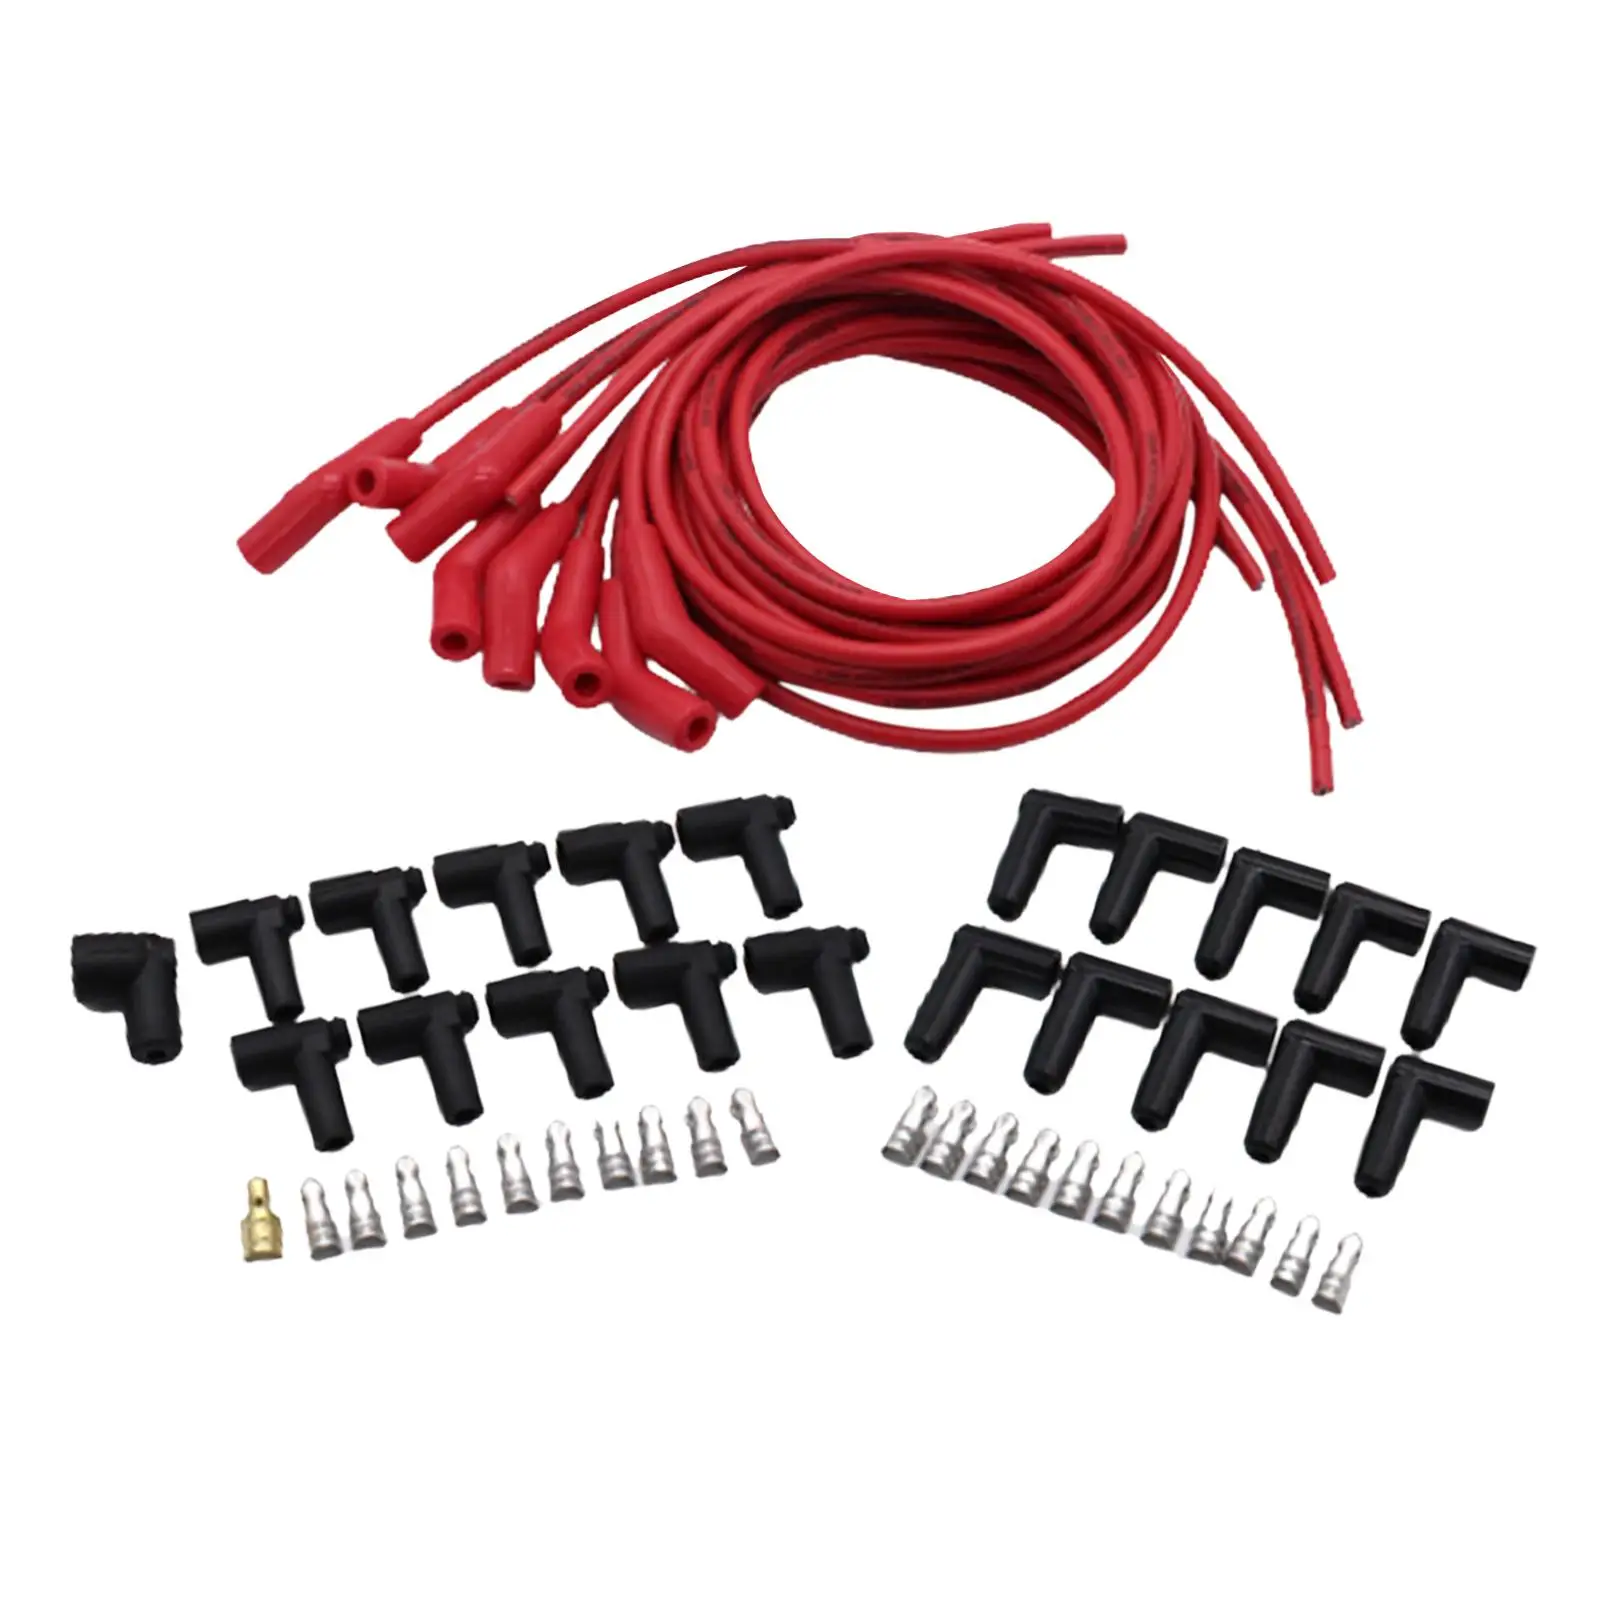 Spark Plug Wire Set Car Accessories Replaces Durable 8.5mm for Mopar